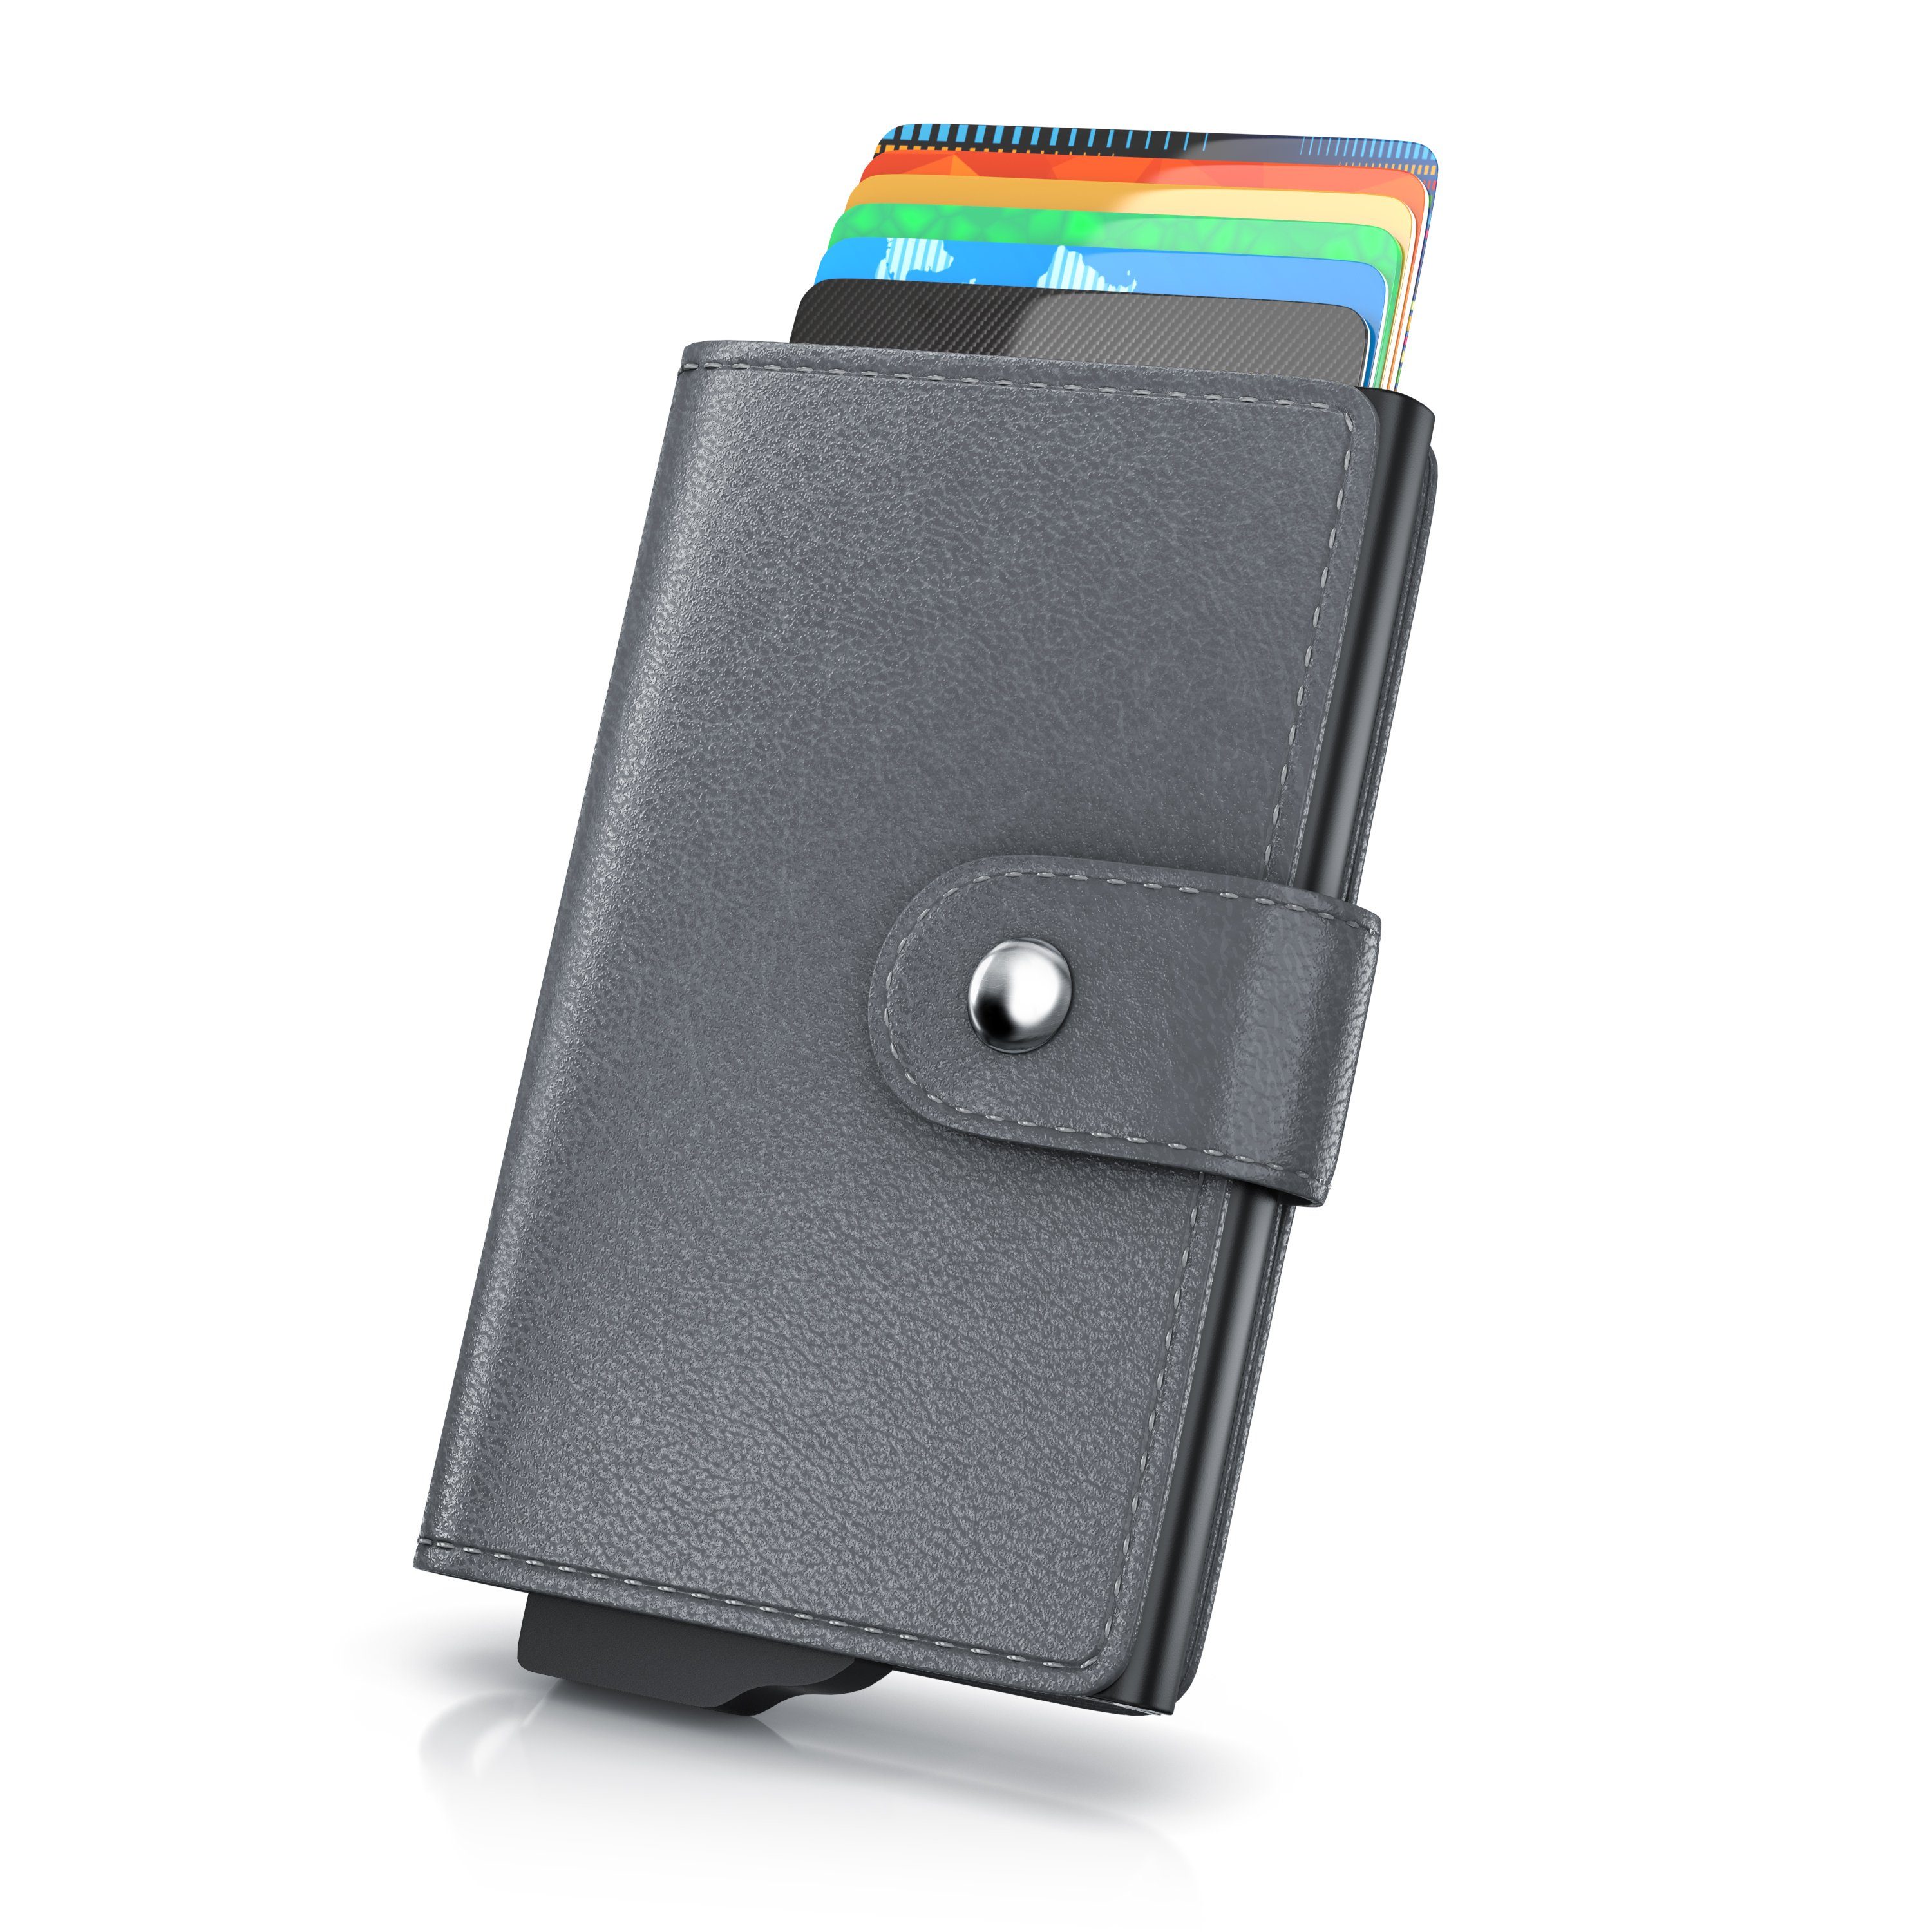 Aplic Kartenetui, NFC / RFID Blocker Karten Portemonnaie, Abschirmung für max. 6 Karten grau